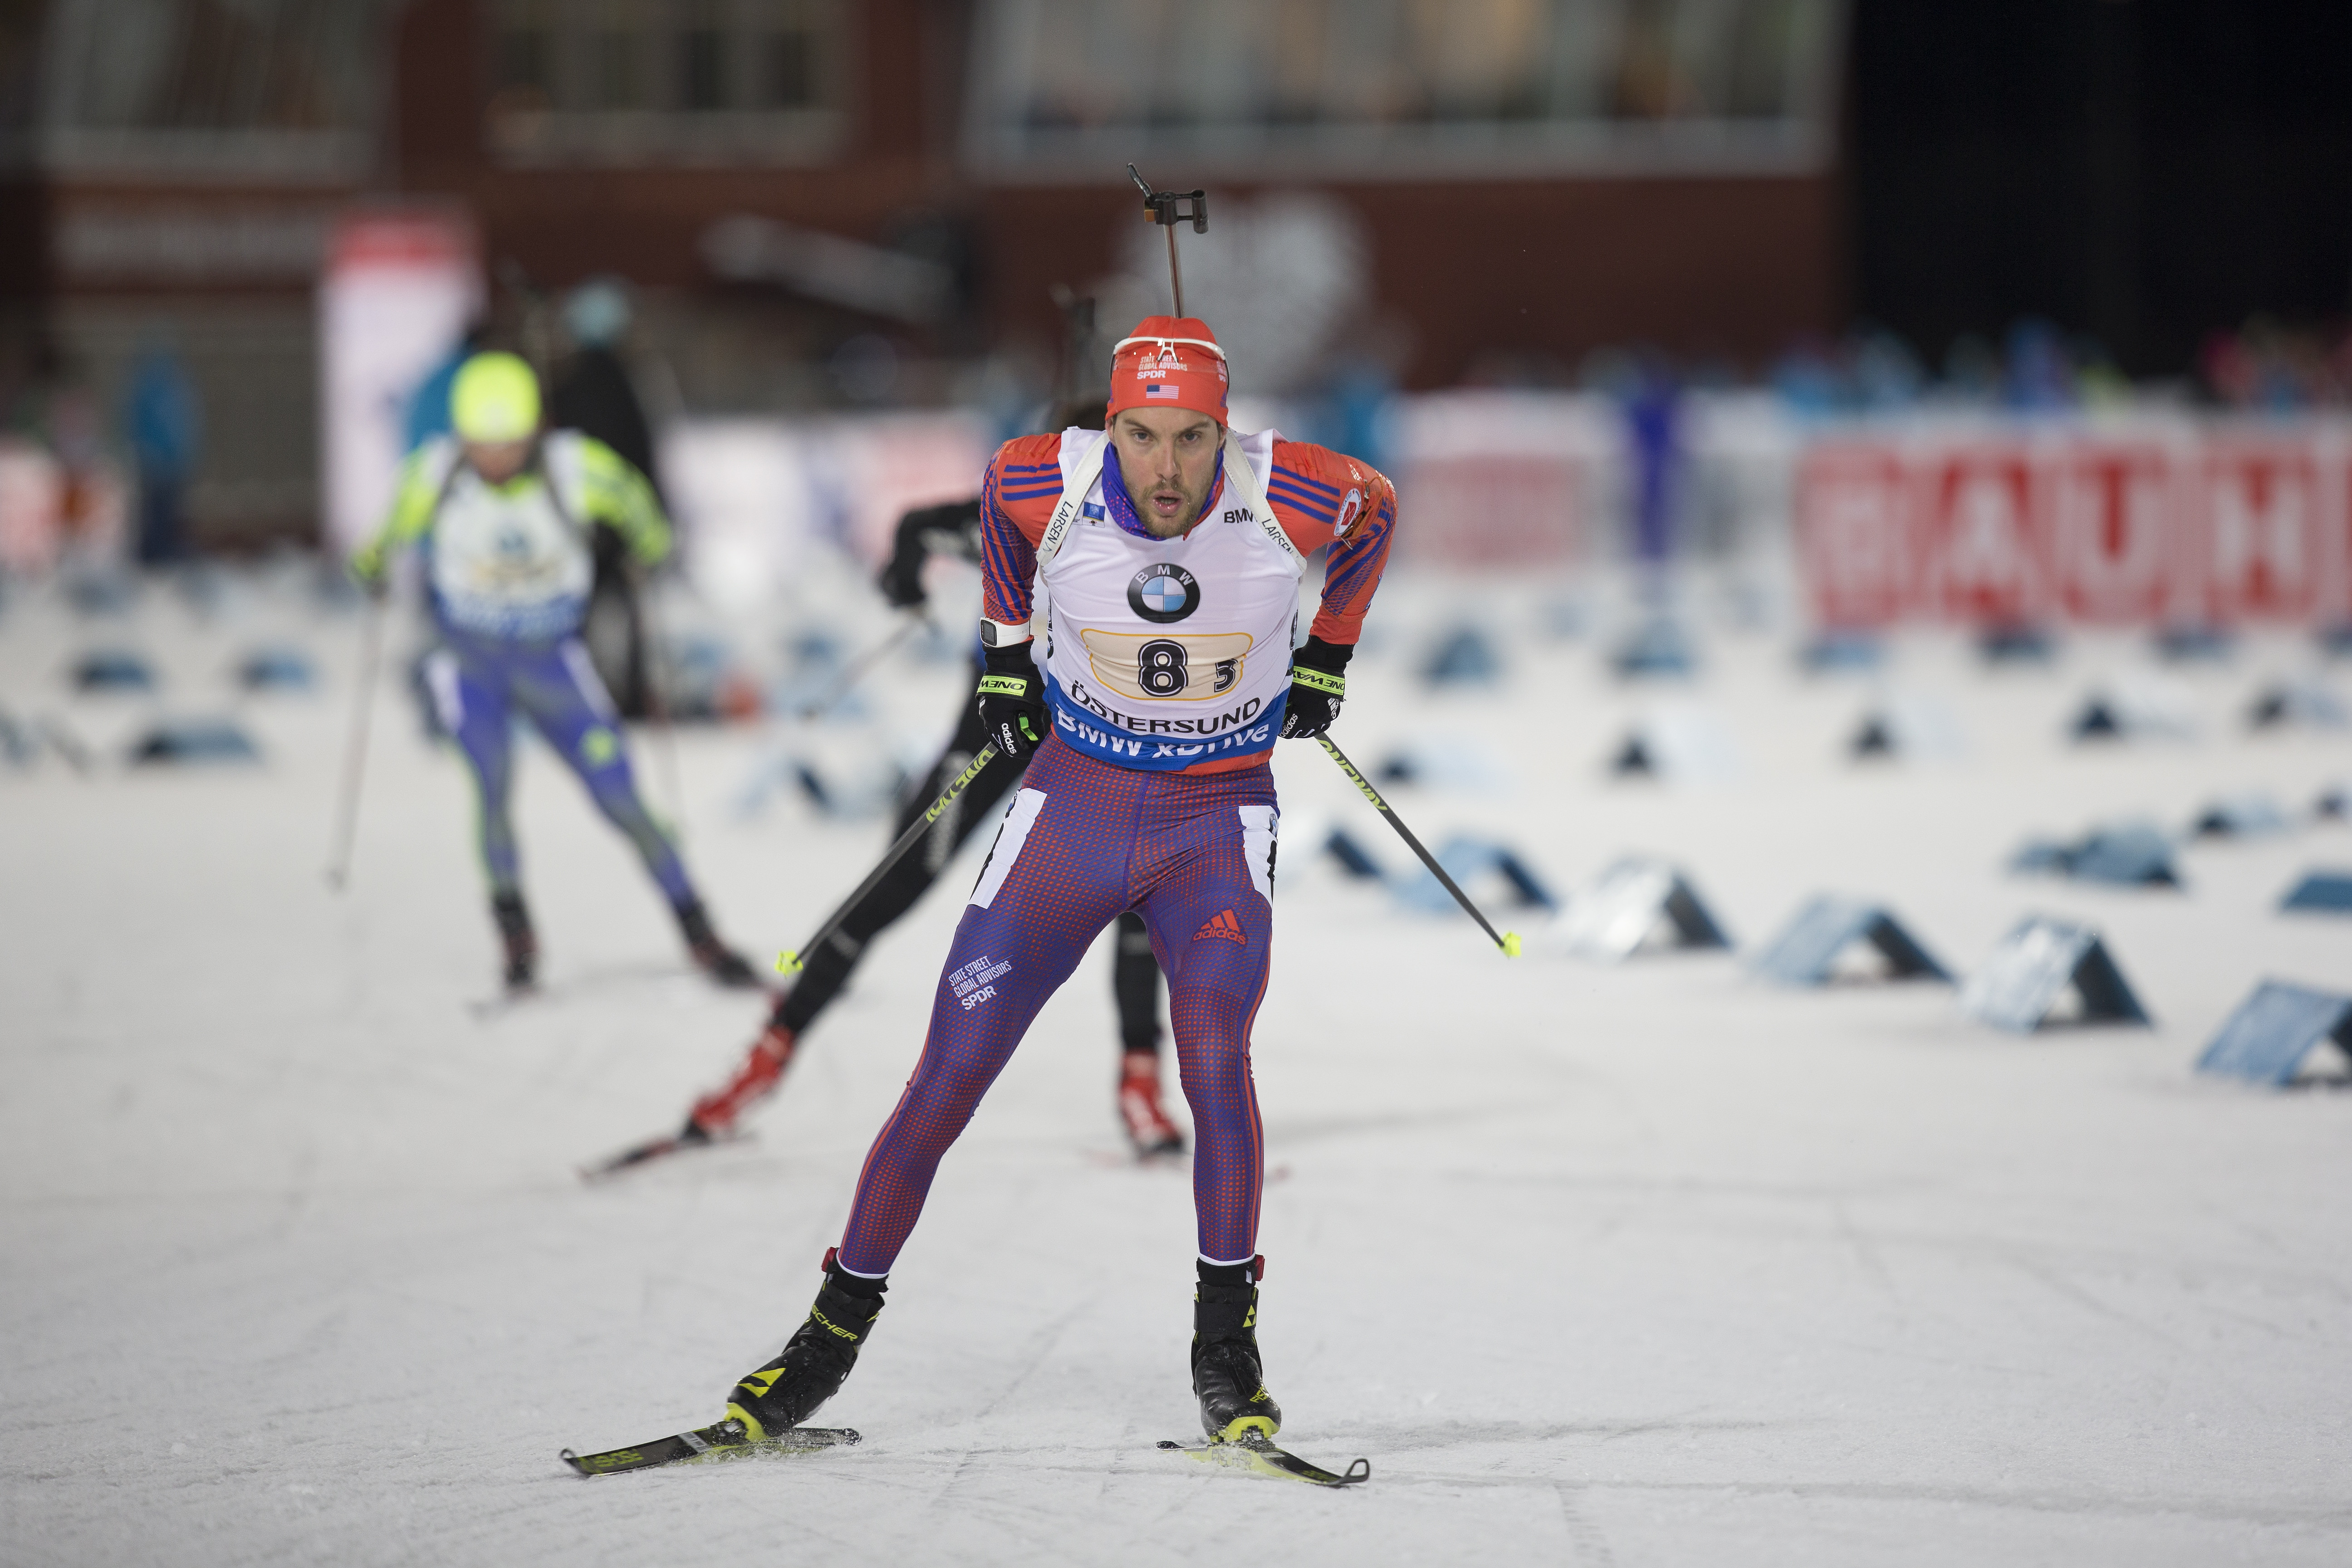 With Nordgren’s Freak Injury, U.S. Men’s Biathlon Team Down to Three